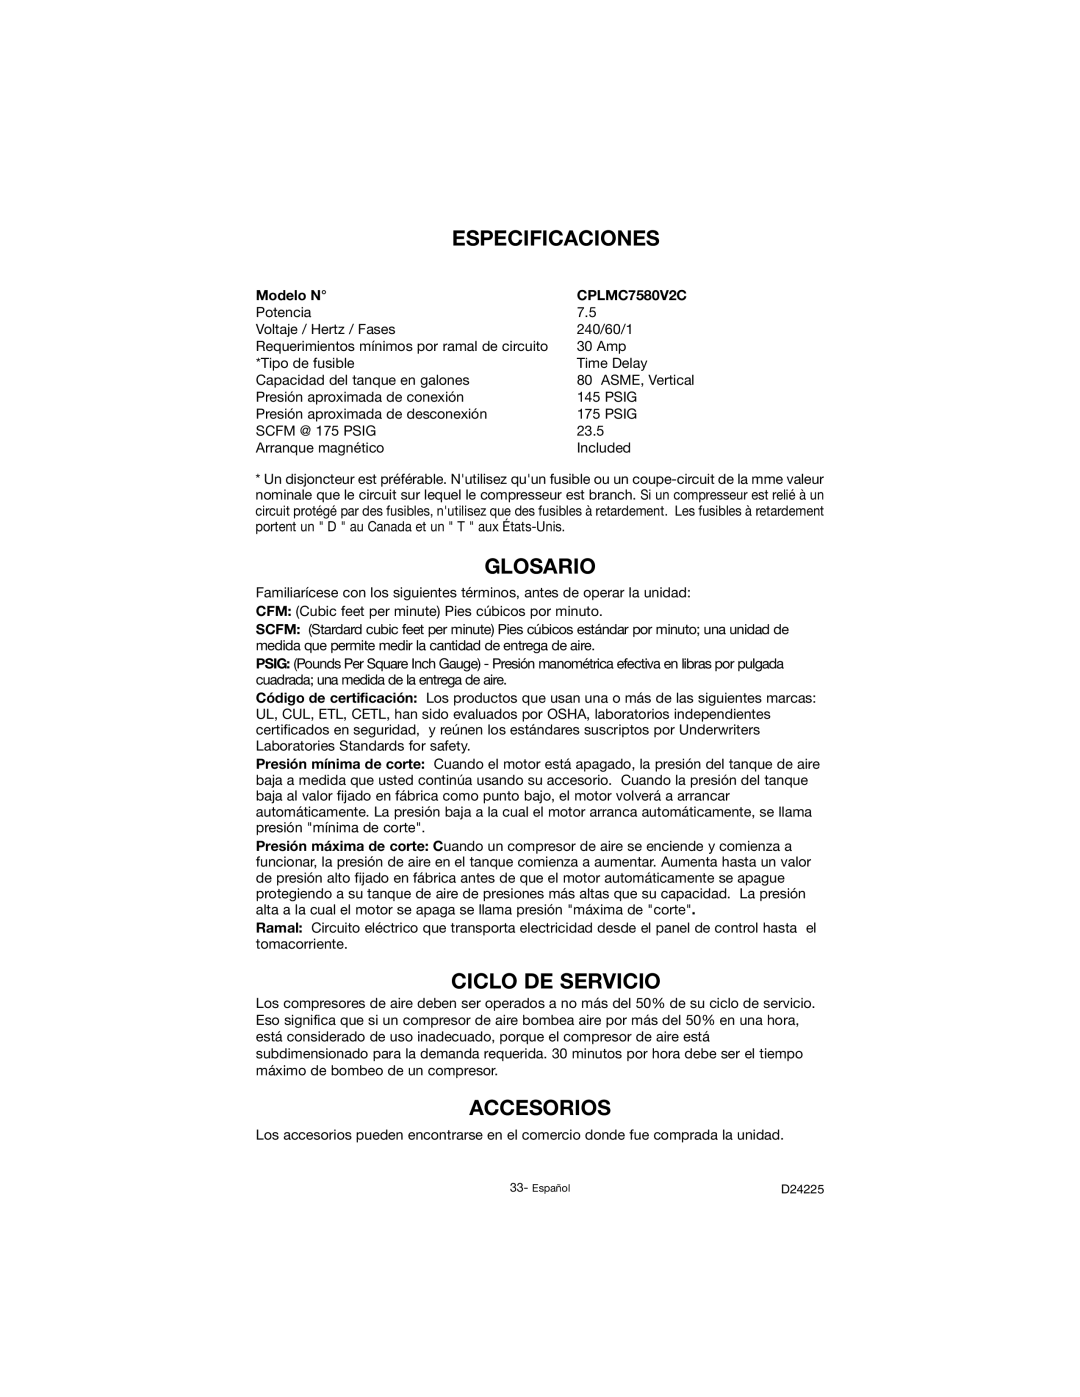 Porter-Cable D24225-049-2 instruction manual Especificaciones, Glosario, Ciclo DE Servicio, Accesorios, Modelo N 